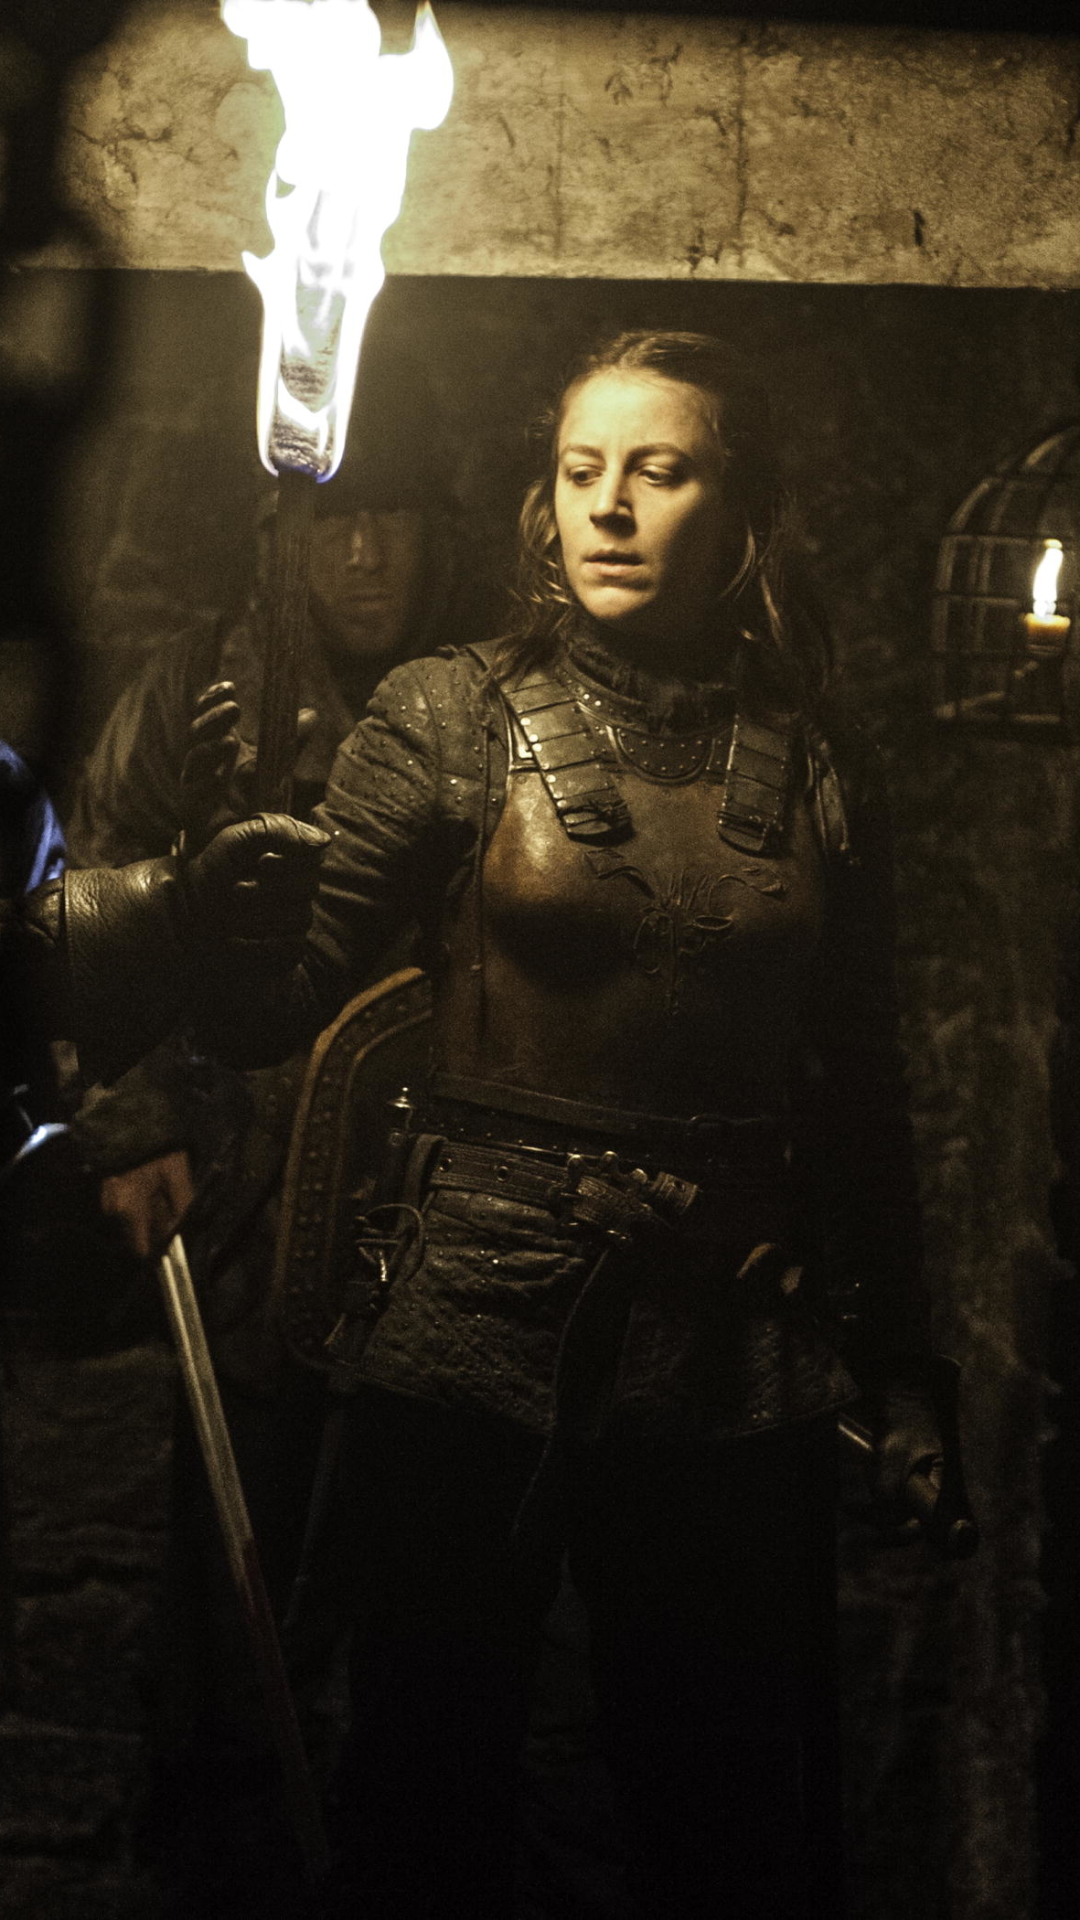 Download mobile wallpaper Game Of Thrones, Tv Show, Yara Greyjoy, Gemma Whelan for free.